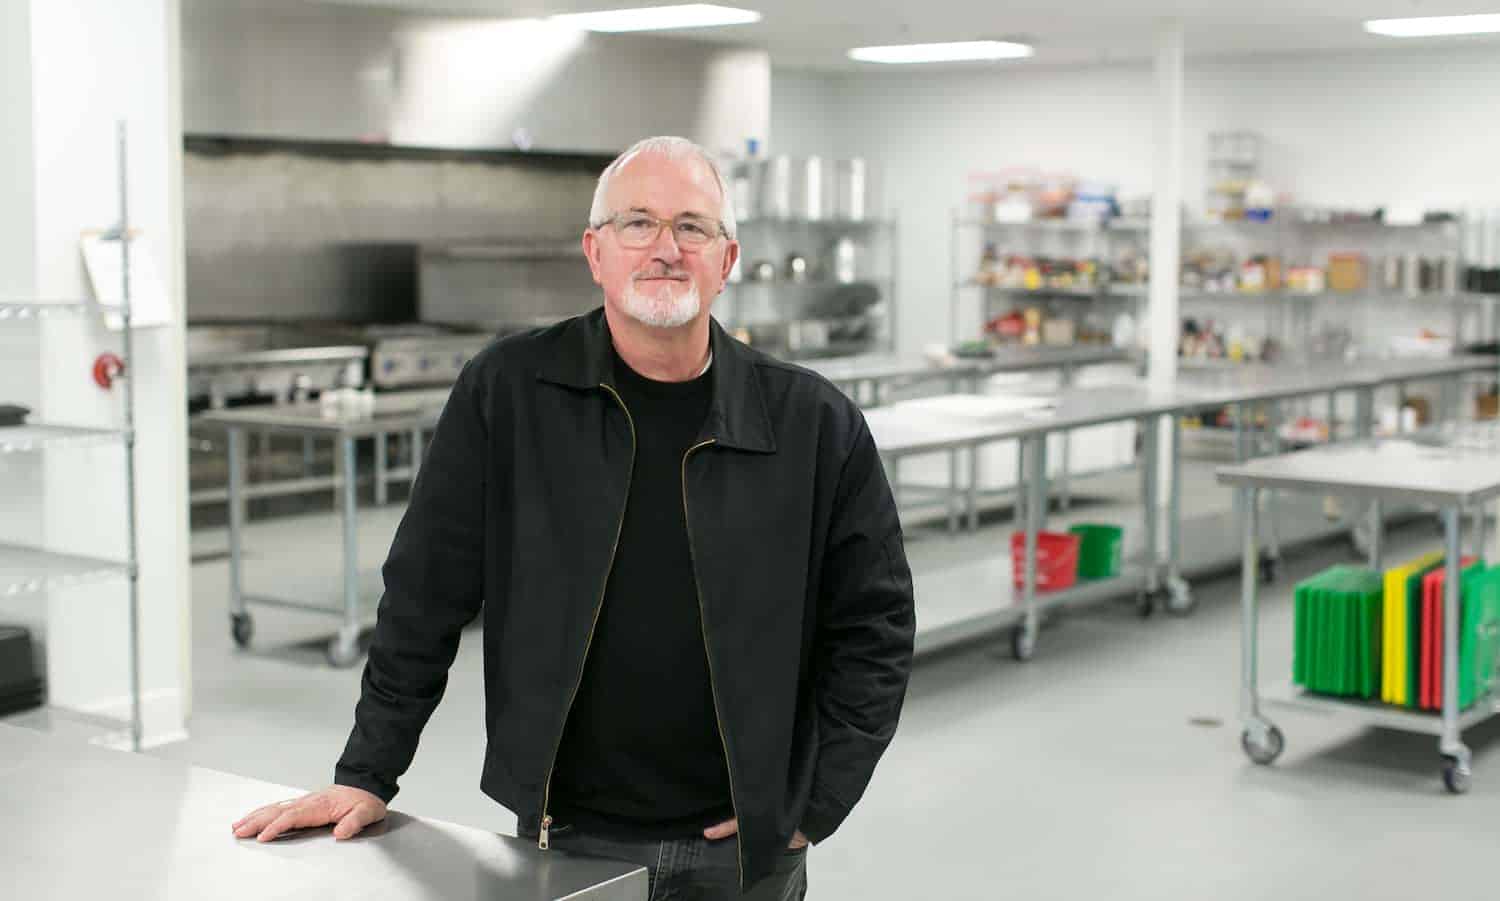 罗伯特•艾格博士带领洛杉矶厨房用爱的目的,和一点点的摇滚乐,用食物来增强社区中人们的福祉。